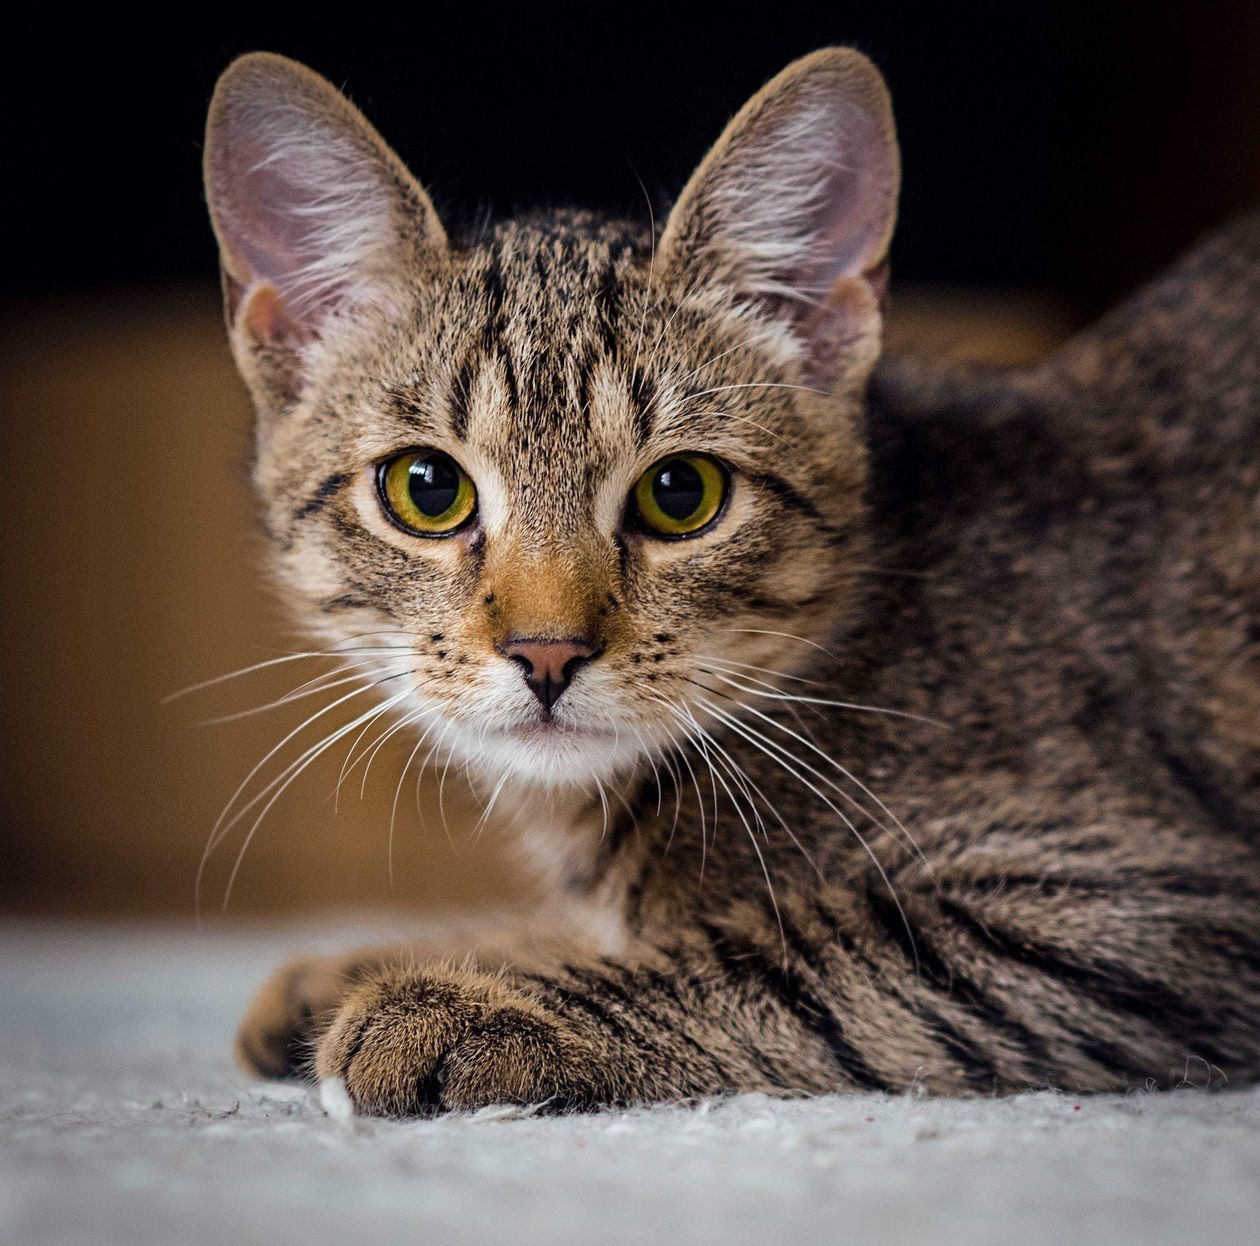 Światowy Dzień Kota 2019. Zdjęcia kotów czytelników. Część 2